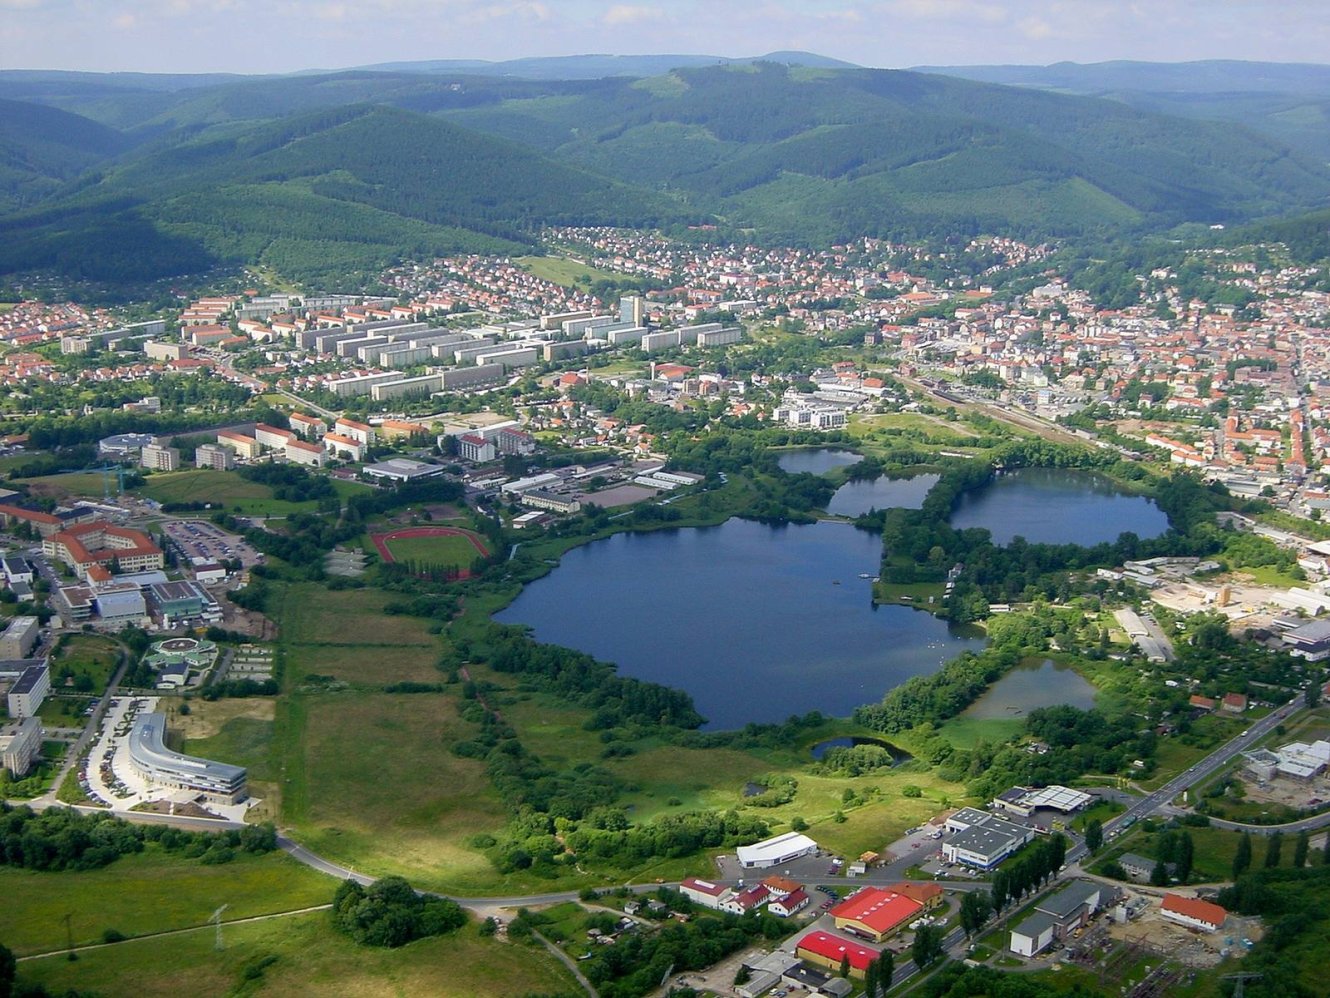 Luftbild der Stadt Ilmenau (2001)